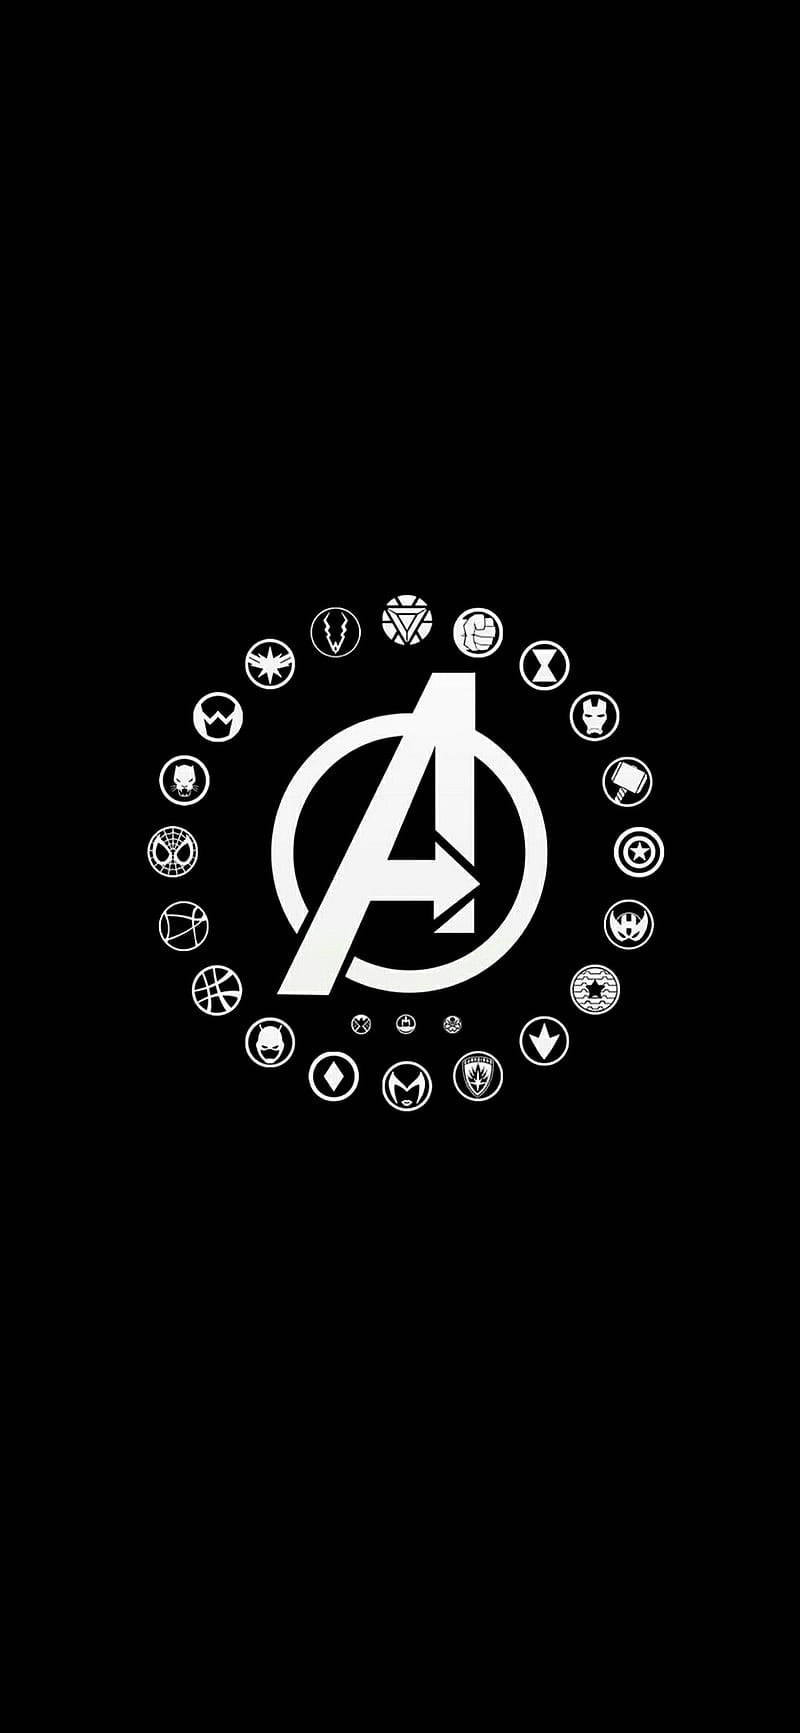 Avenger Hero Logos In Solid Black